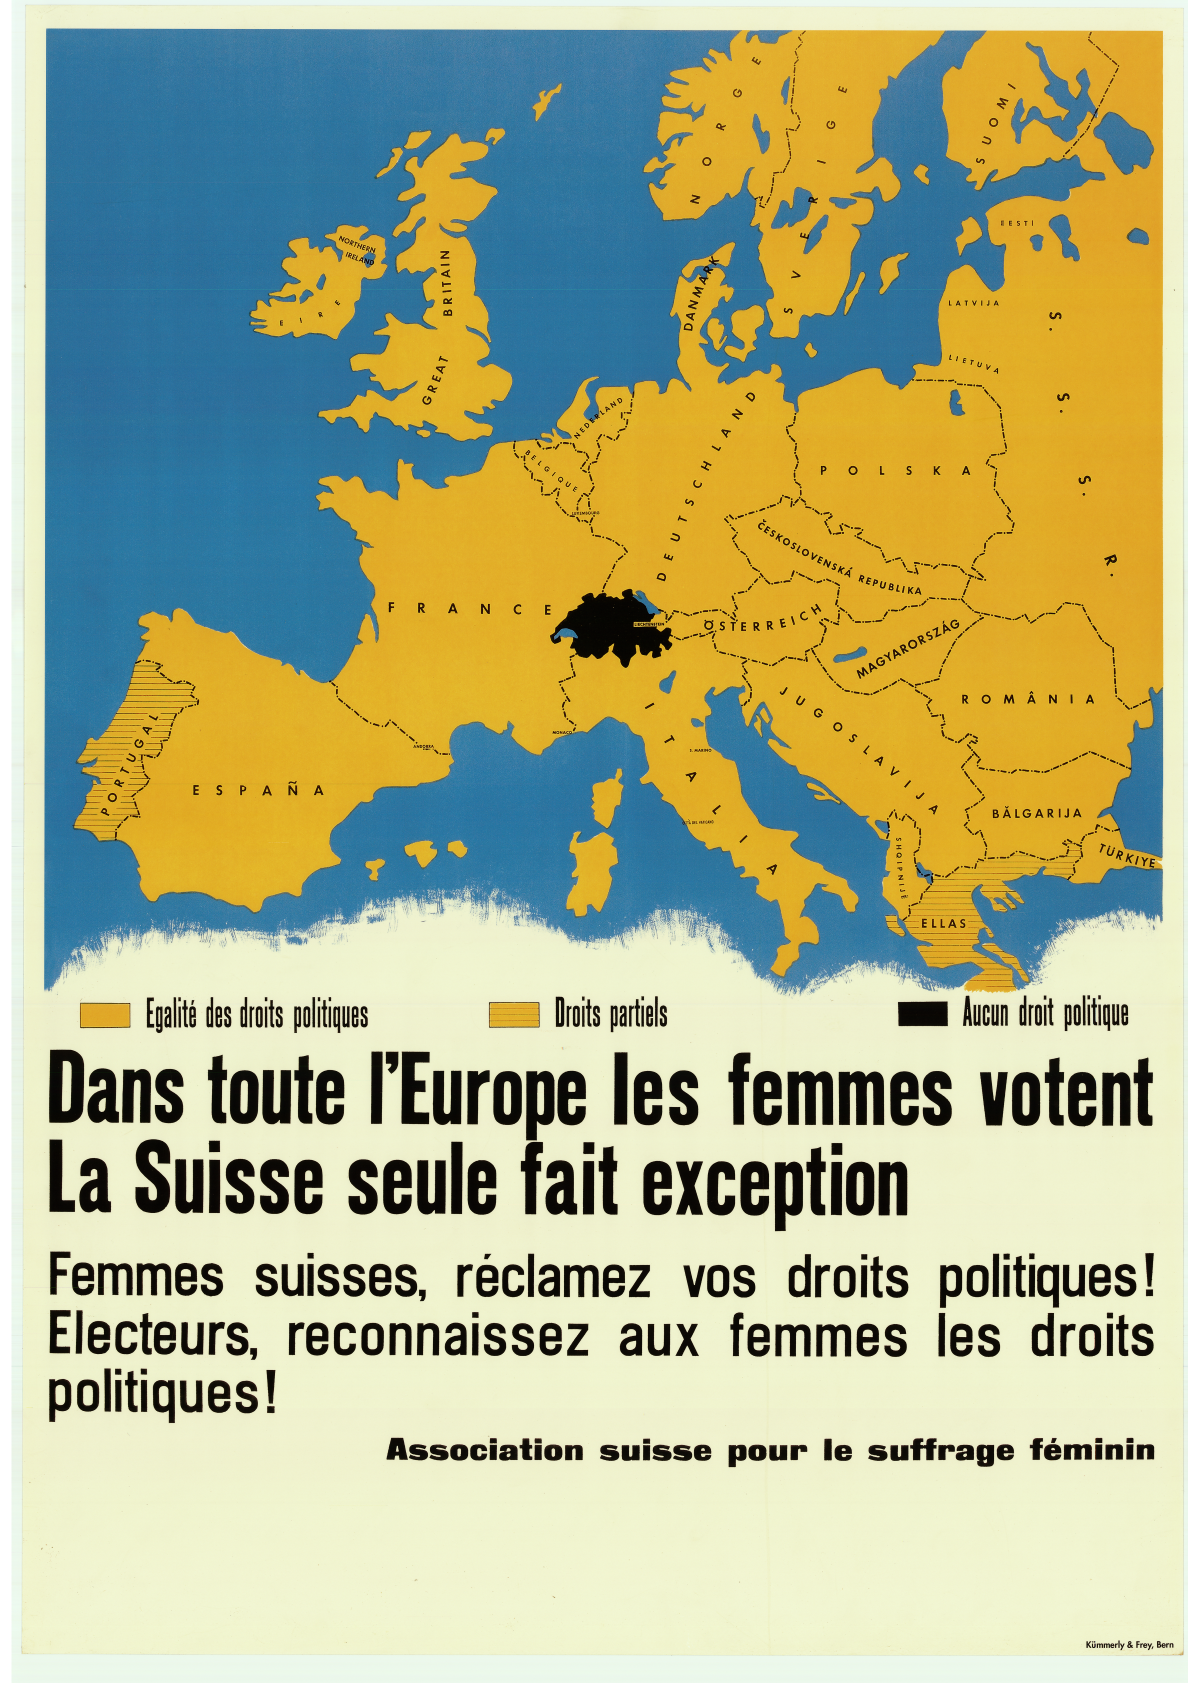 Association suisse pour le suffrage féminin, 1950 © Gosteli-Stiftung, Plakatsammlung